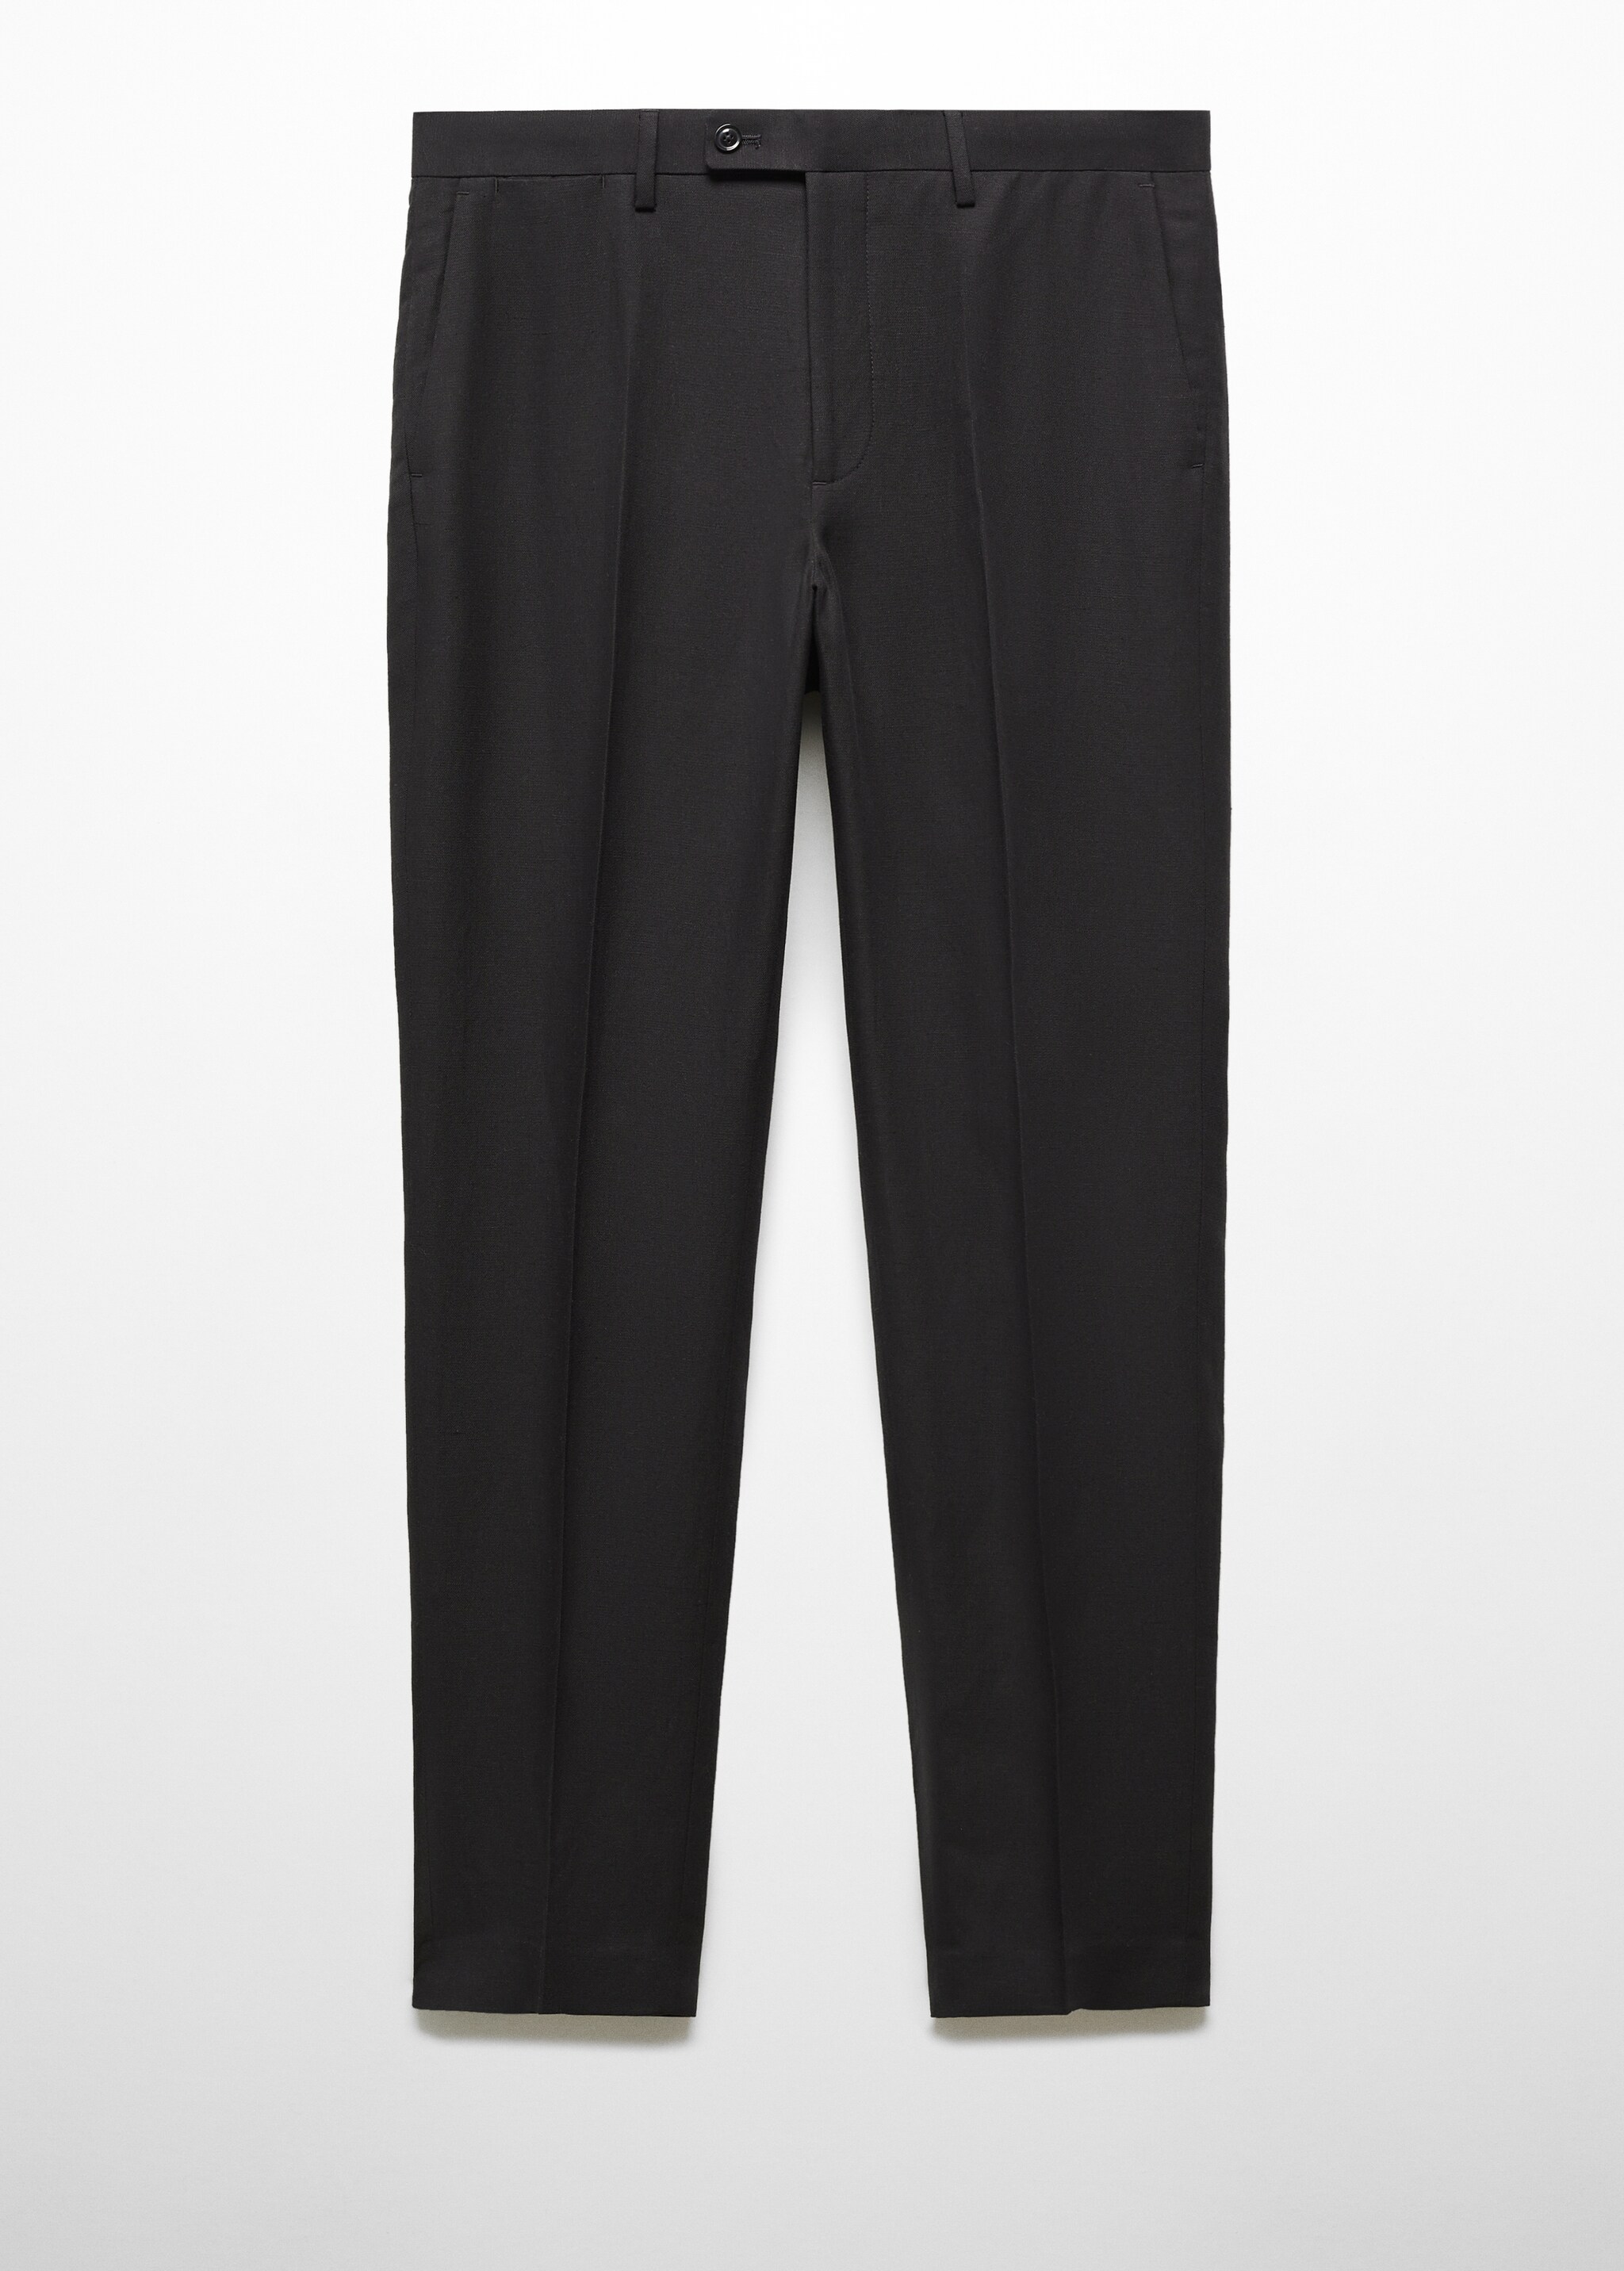 Pantaloni completo lyocell lino - Articolo senza modello